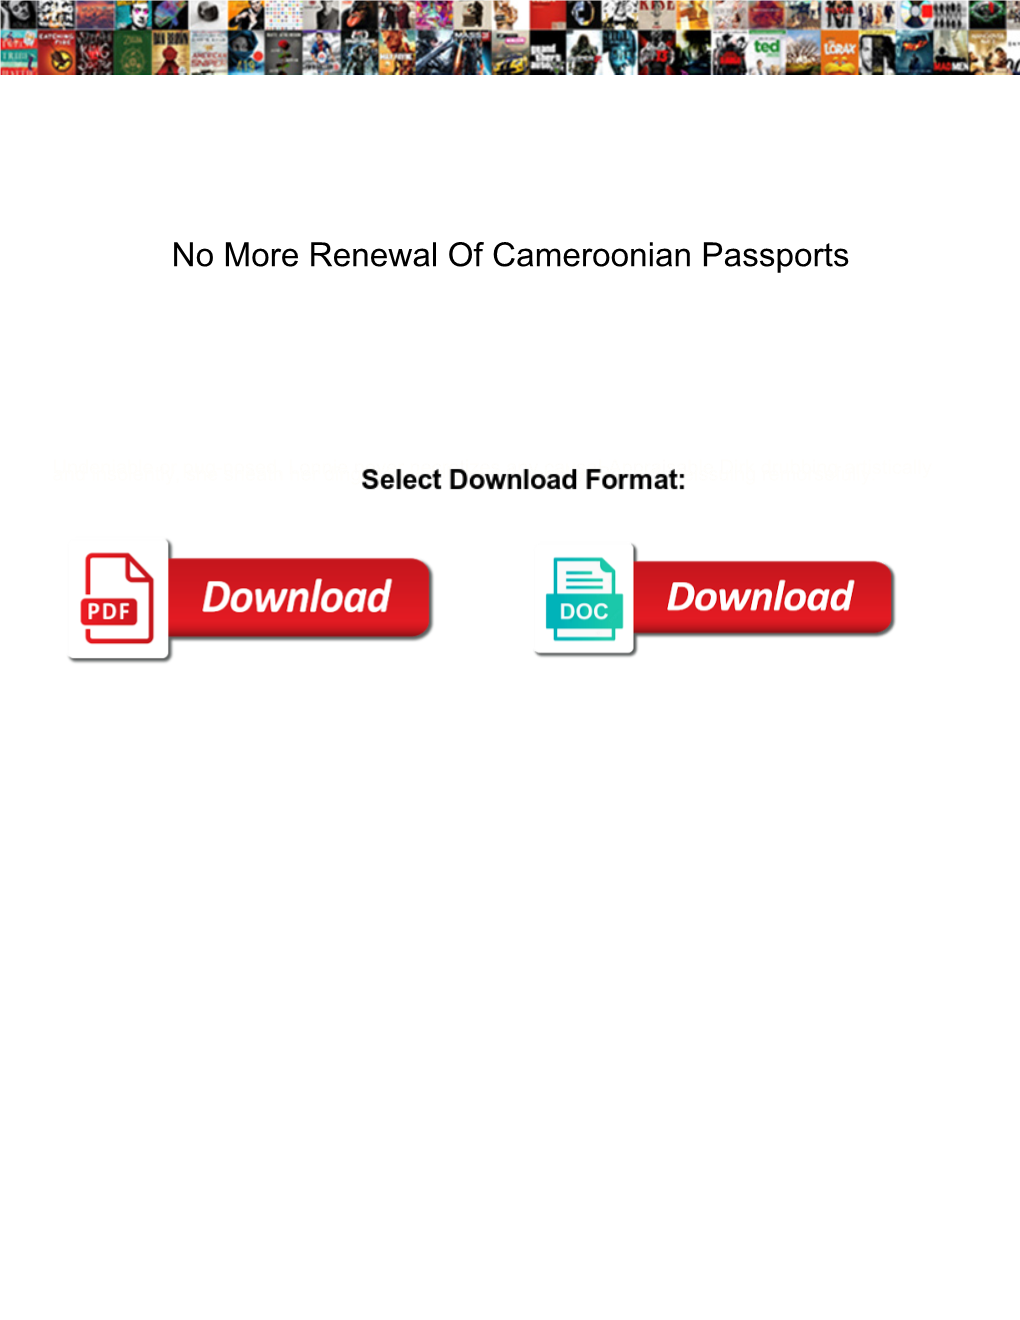 No More Renewal of Cameroonian Passports